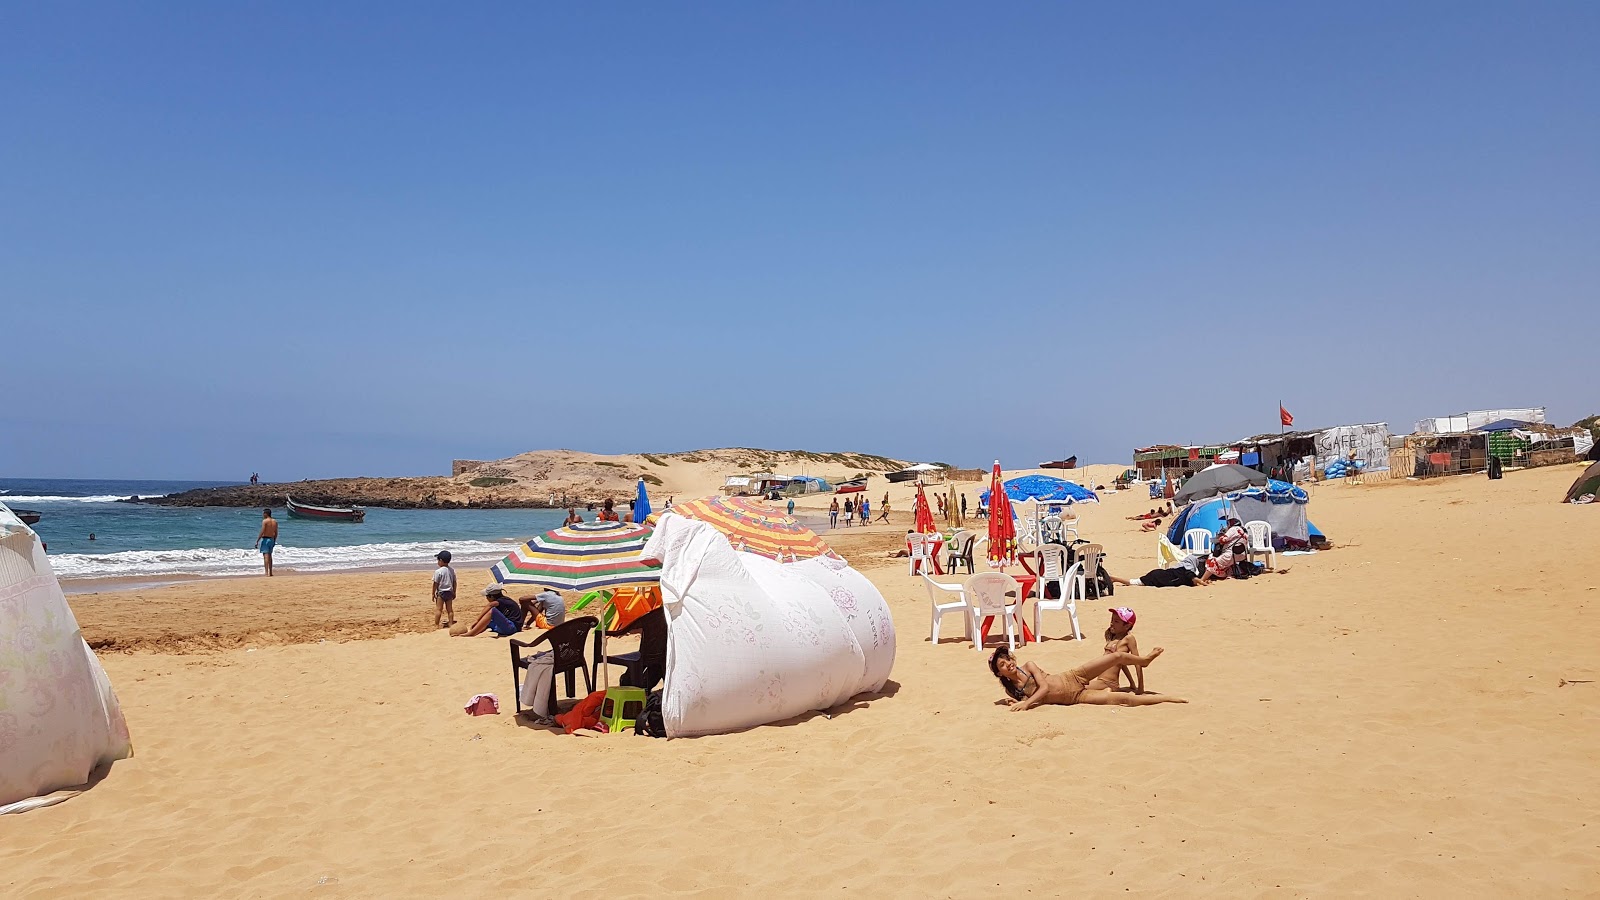 Foto von Sidi Belkheir Beach shaty sydy balkhyr befindet sich in natürlicher umgebung